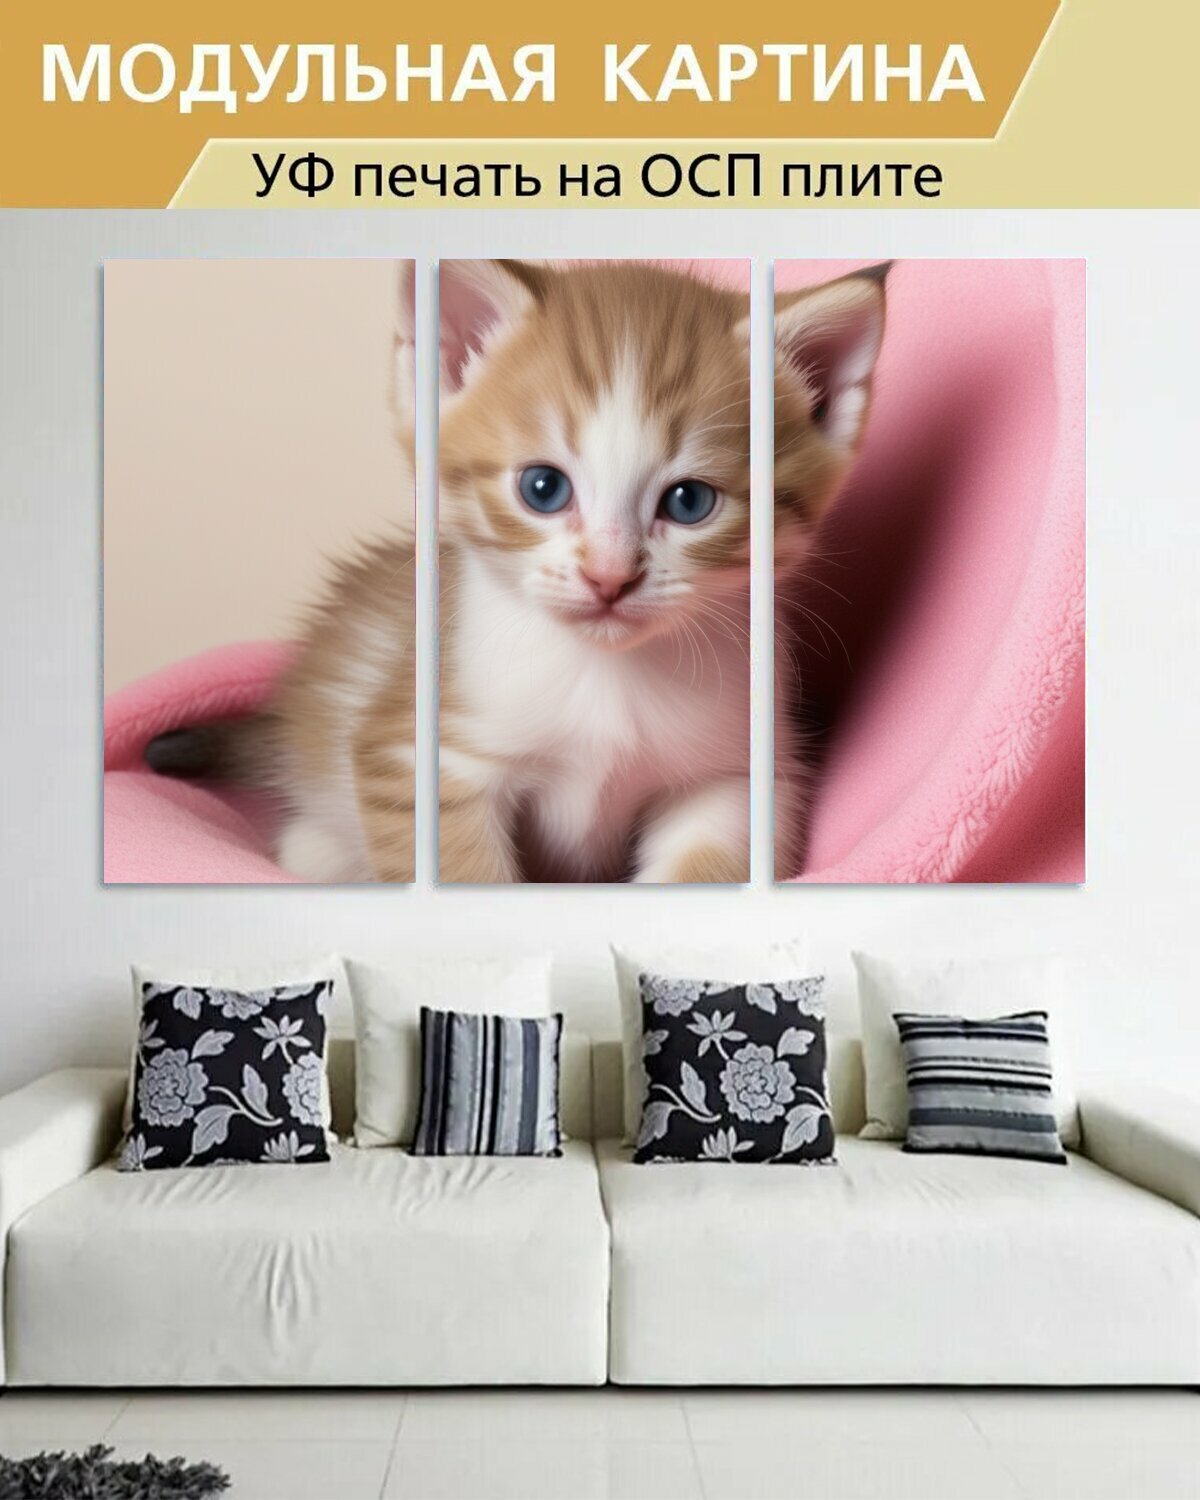 Модульная картина на ОСП любителям природы "Животные, котенок, в одеялке" 188x125 см. 3 части для интерьера на стену